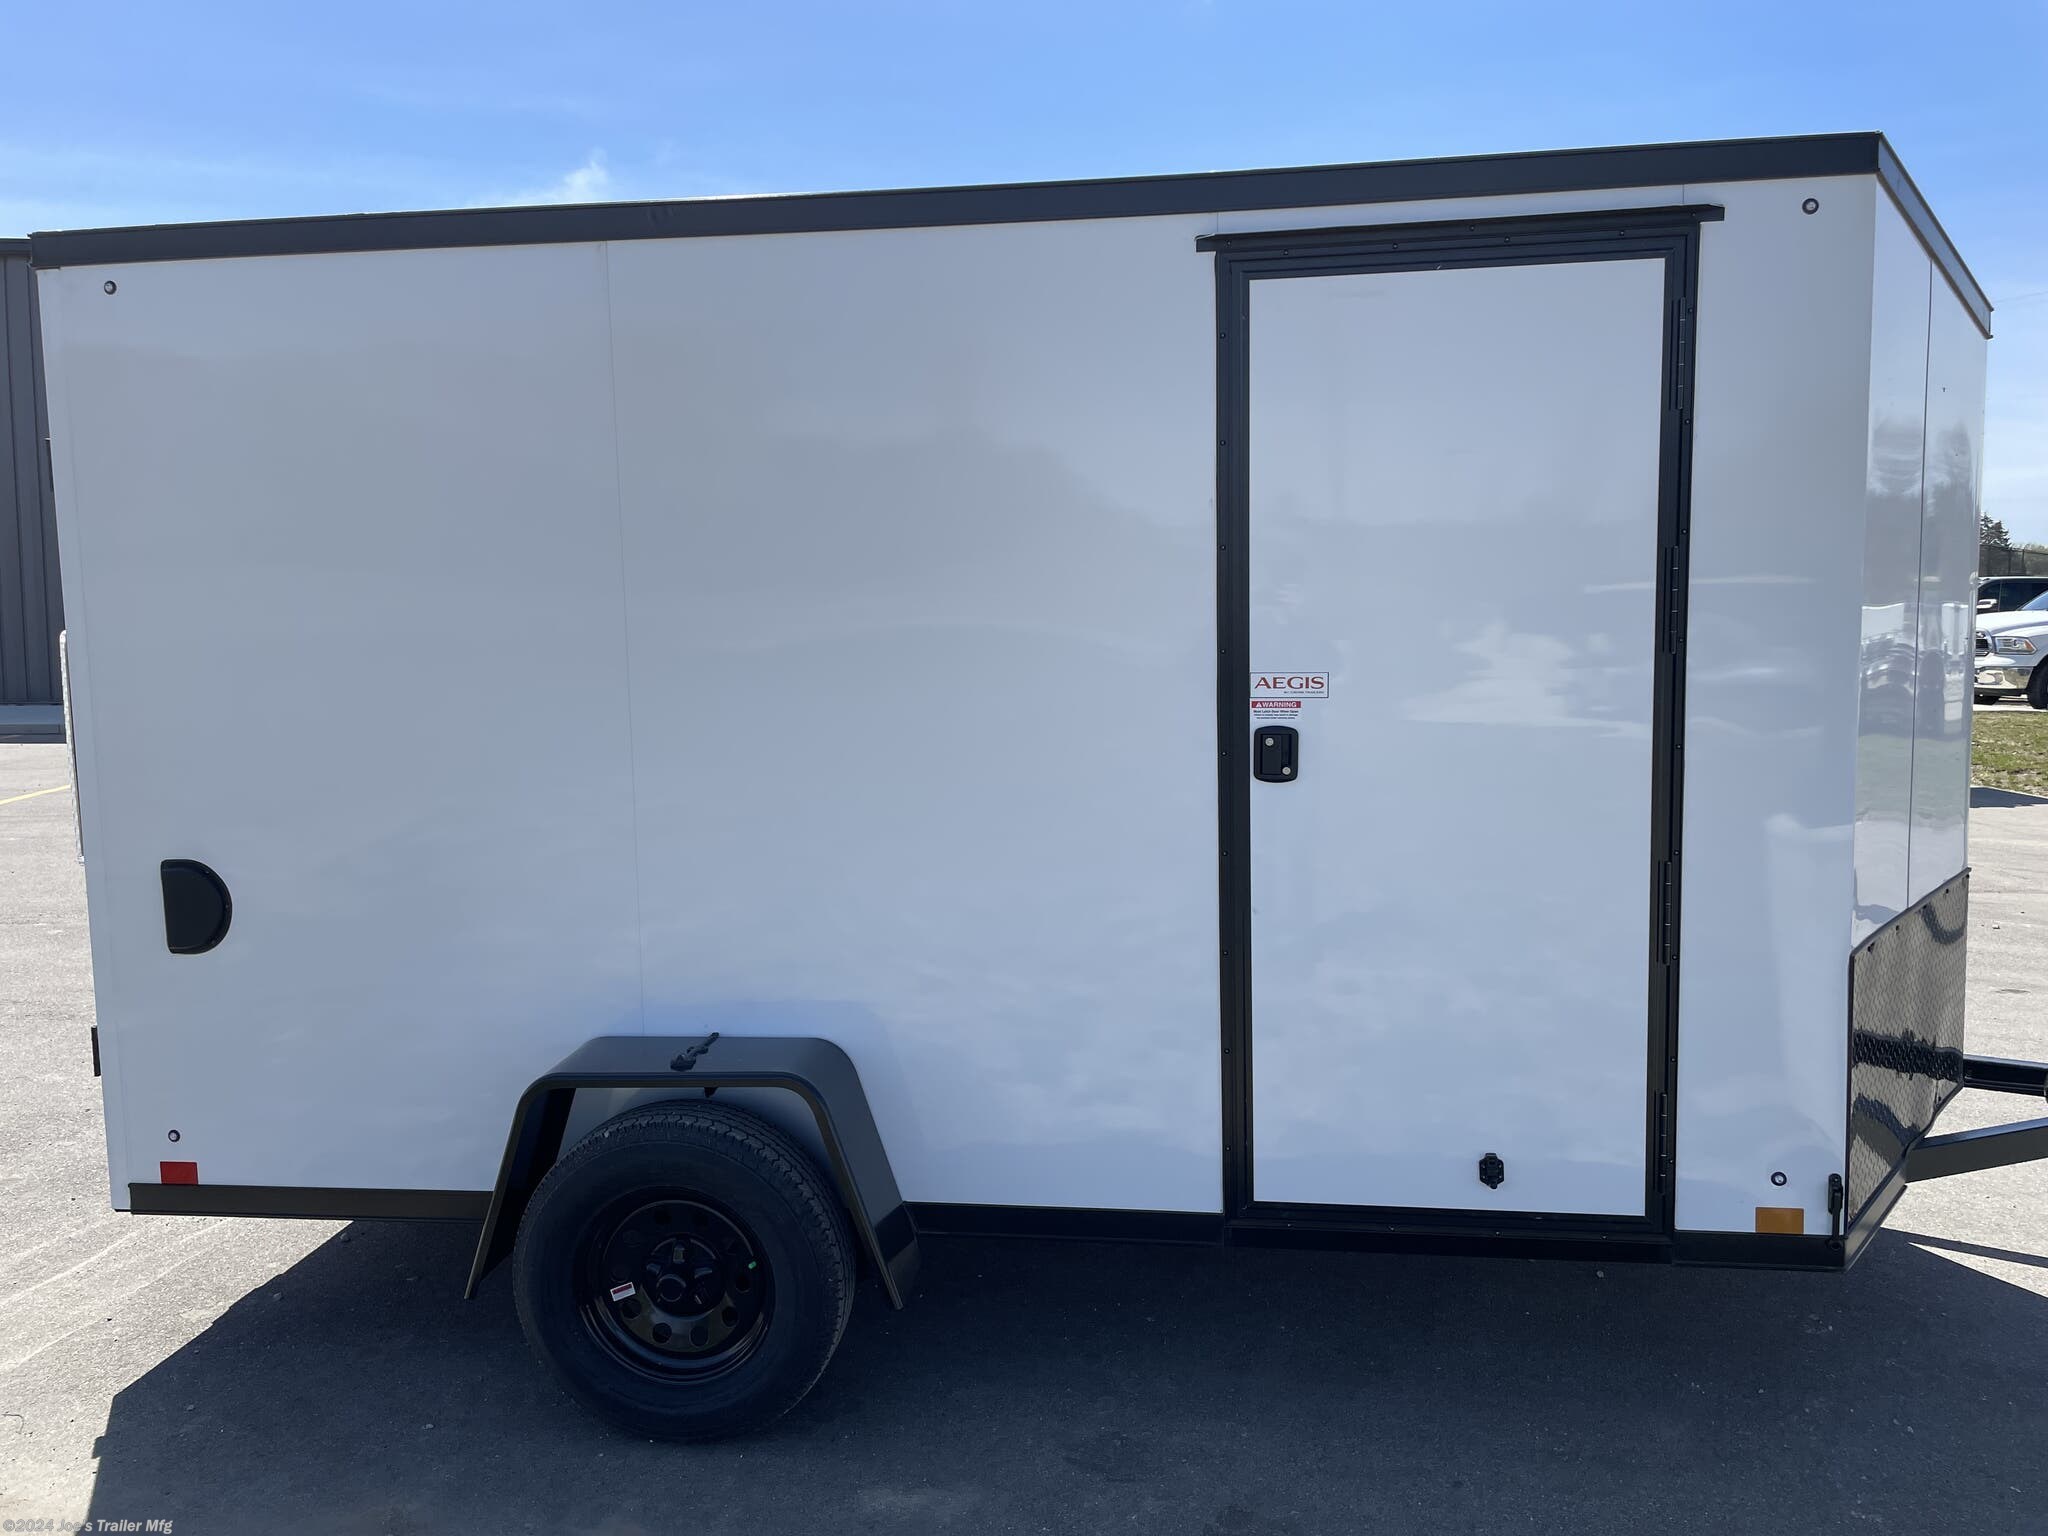 Enclosed trailer